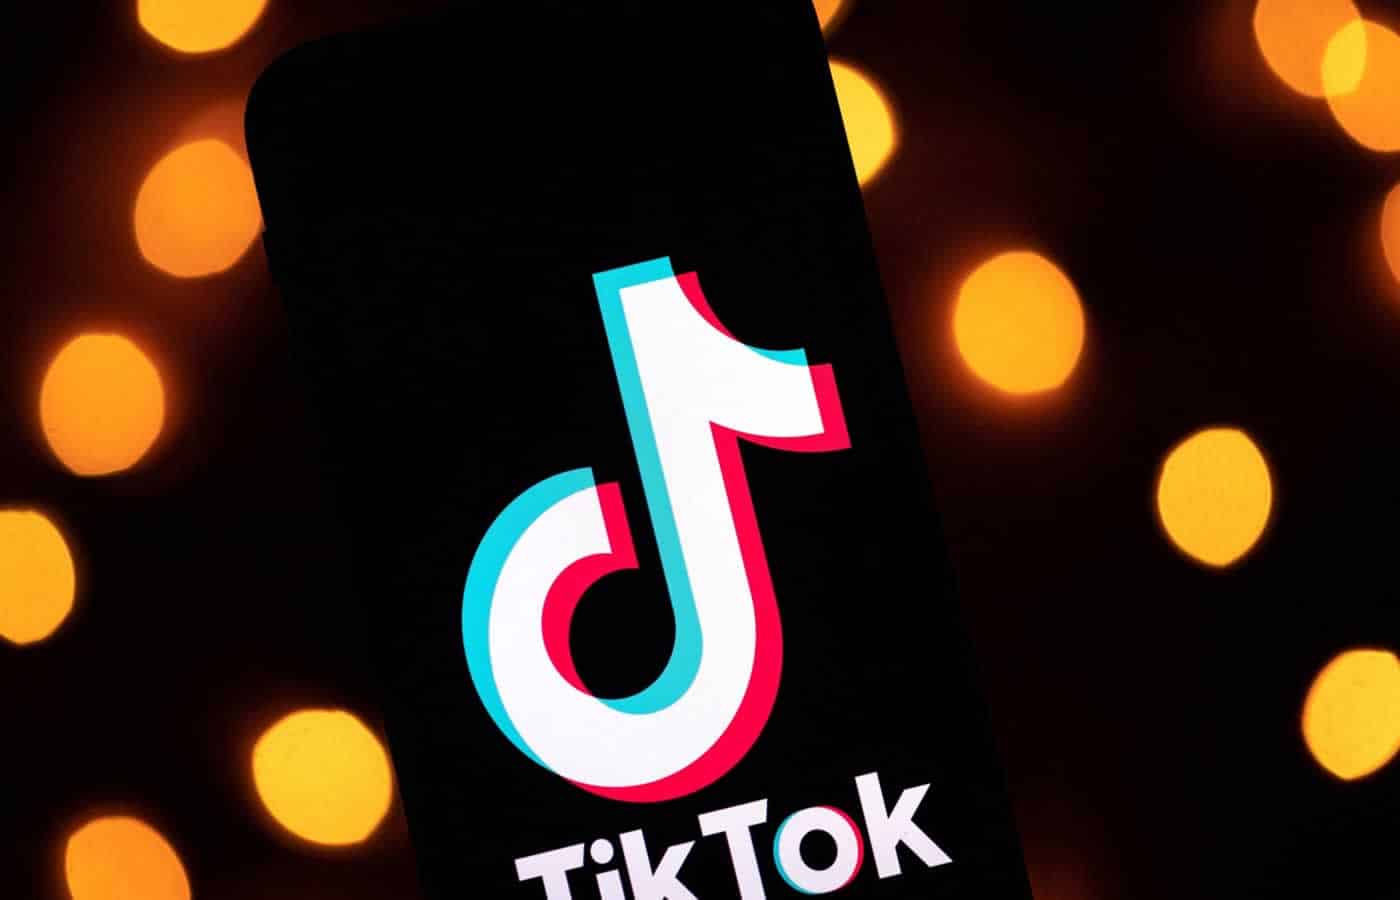 Σύμφωνα με την Google, έως και το 40% των ατόμων ηλικίας 18-24 ετών χρησιμοποιούν το TikTok ως πηγή πληροφοριών.